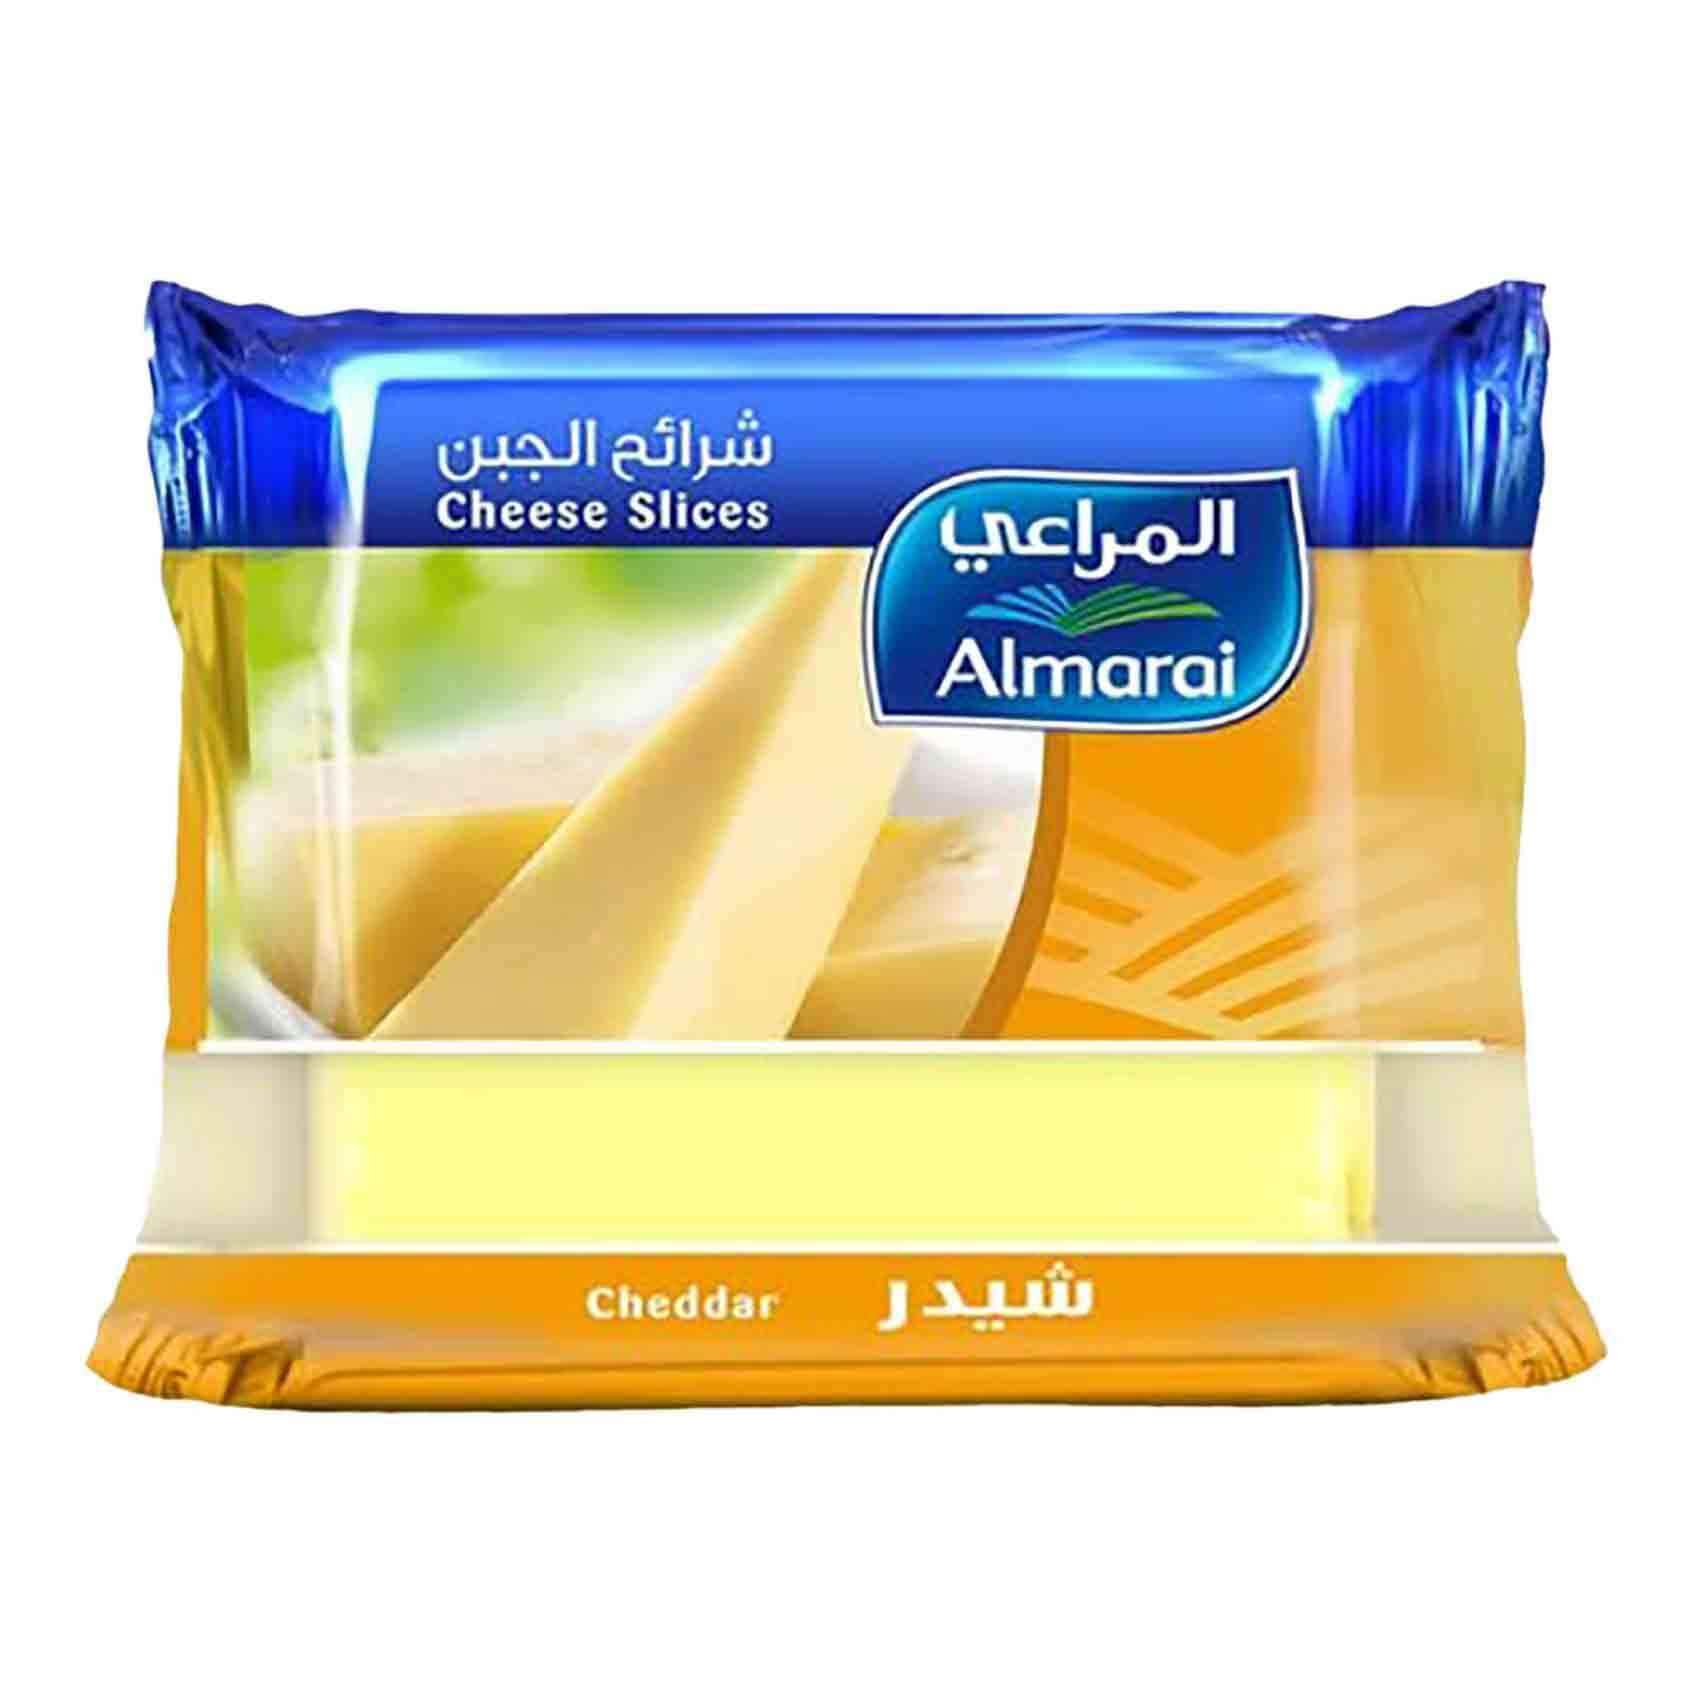 Buy Almarai Cheddar Cheese Slices 200g Online - Shop Fresh Food on